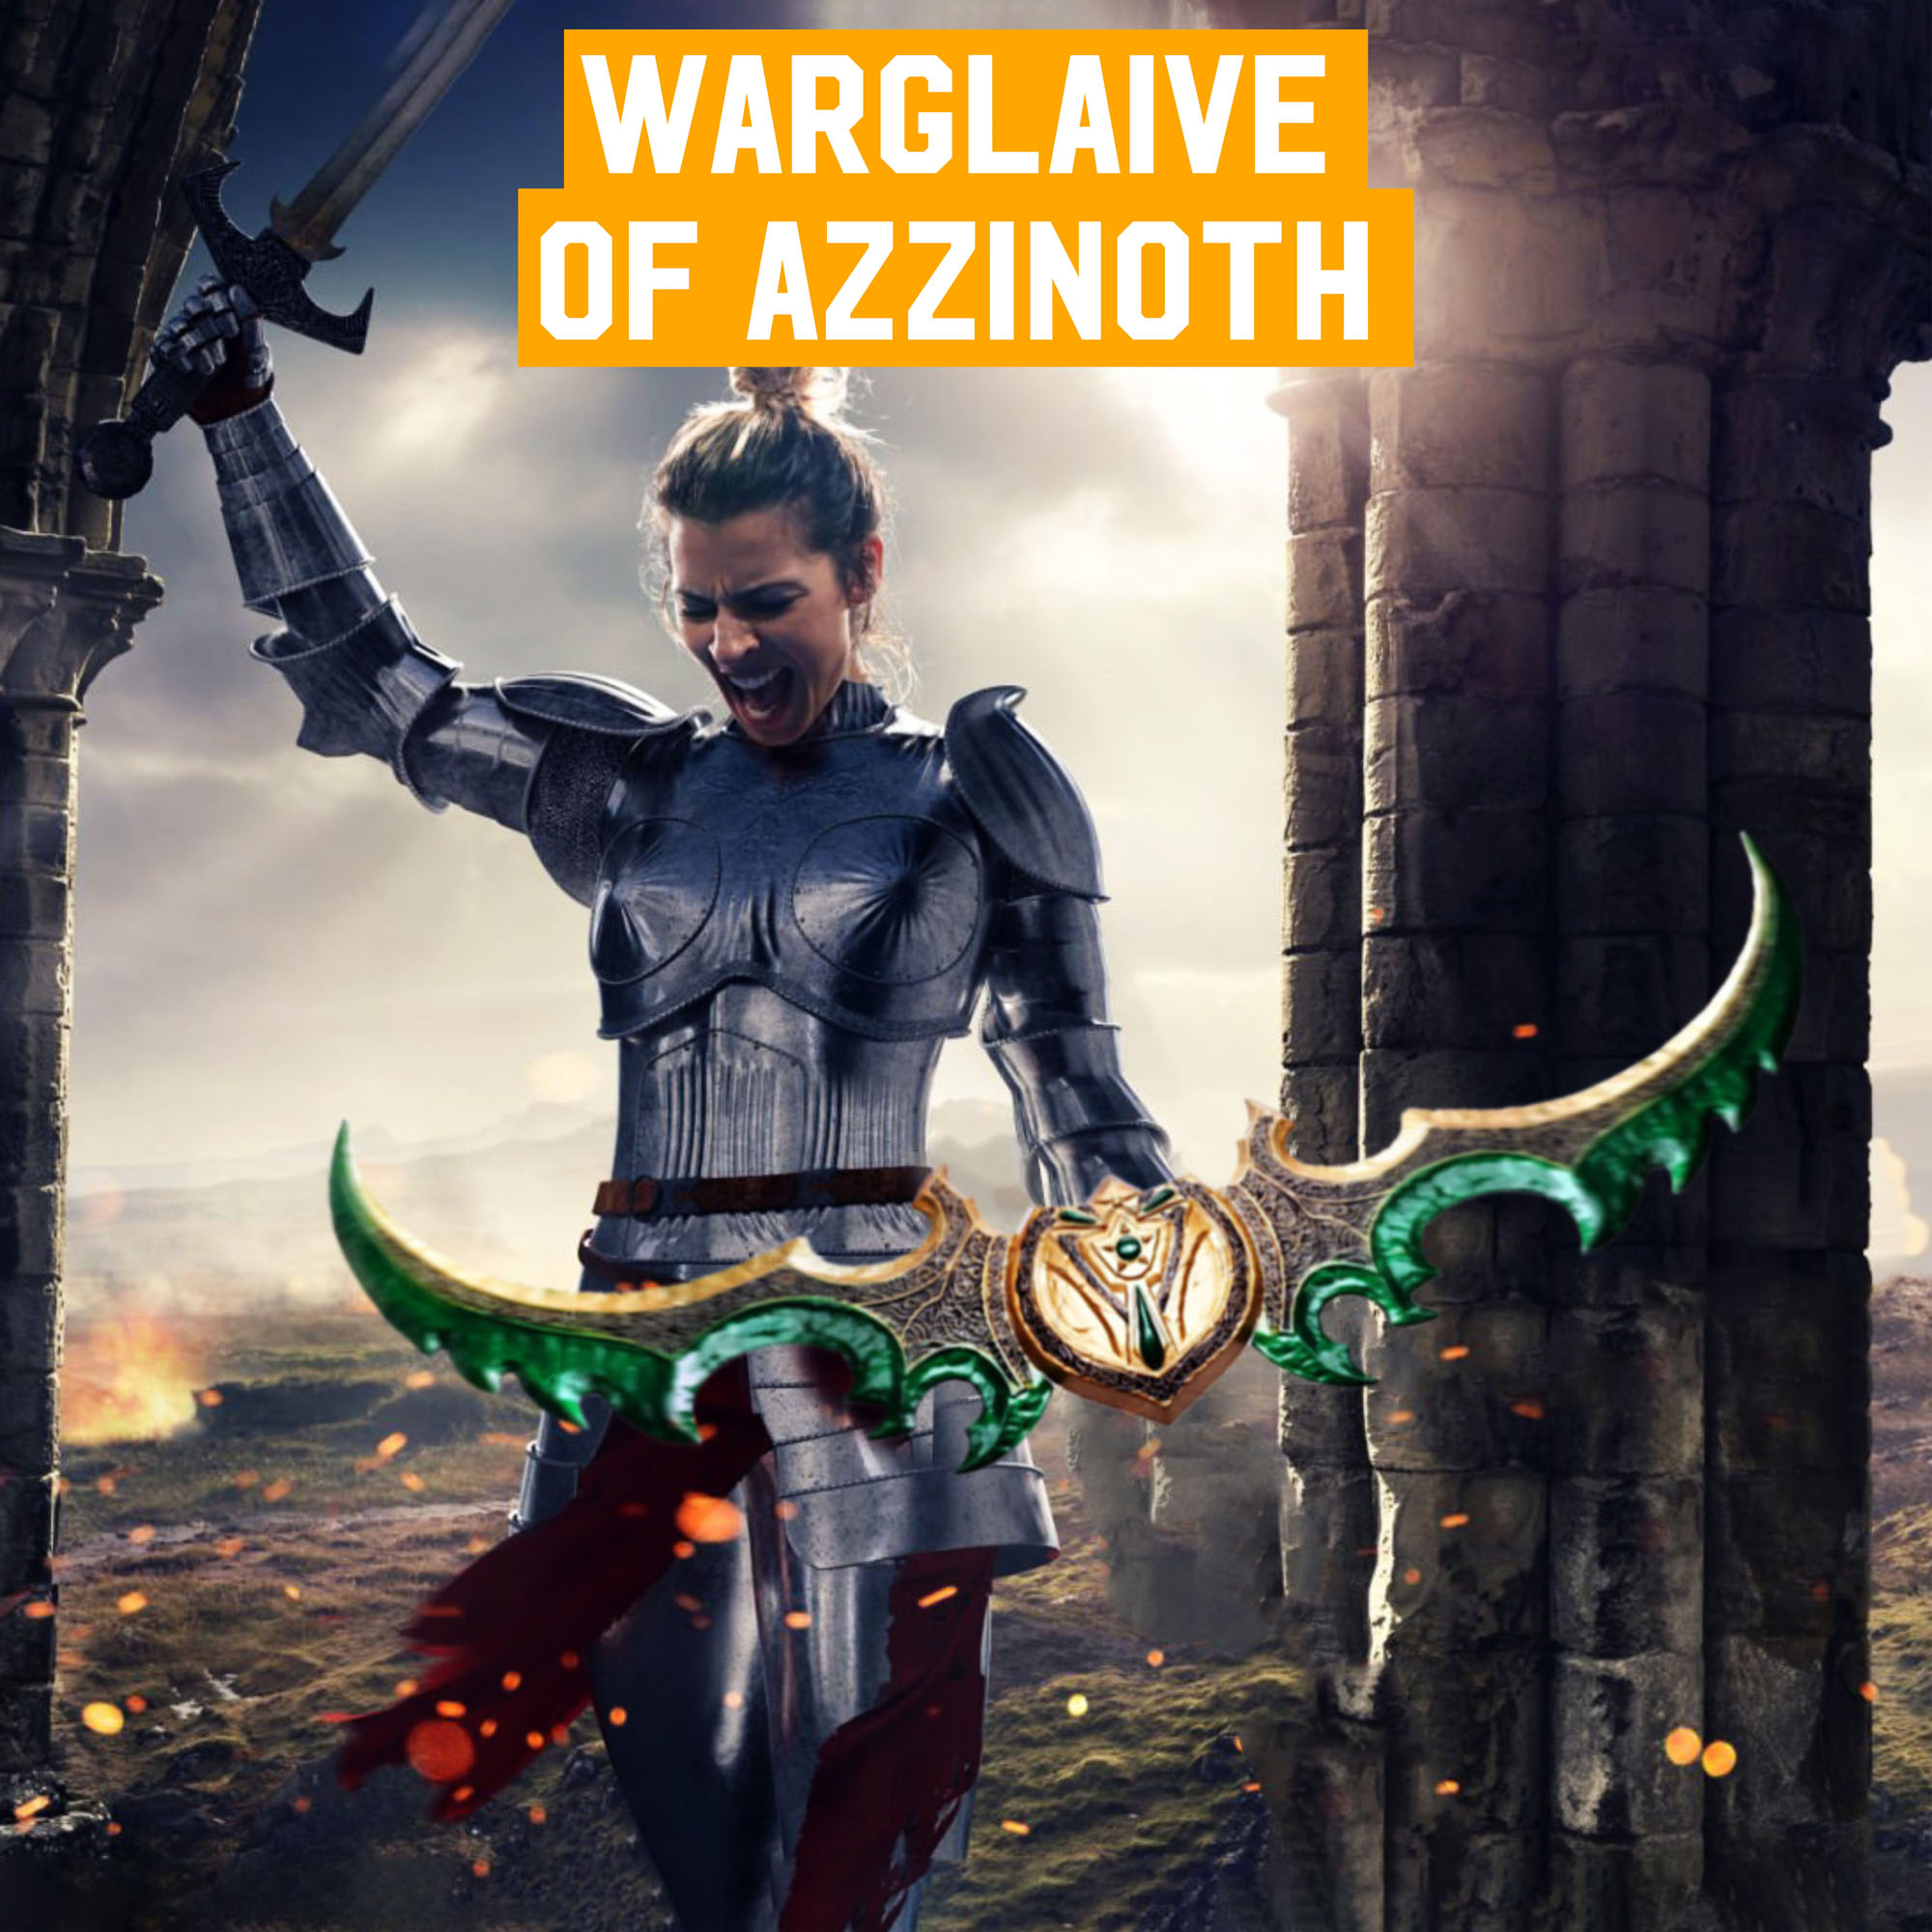 Kriegsgleve von Azzinoth - World of Warcraft